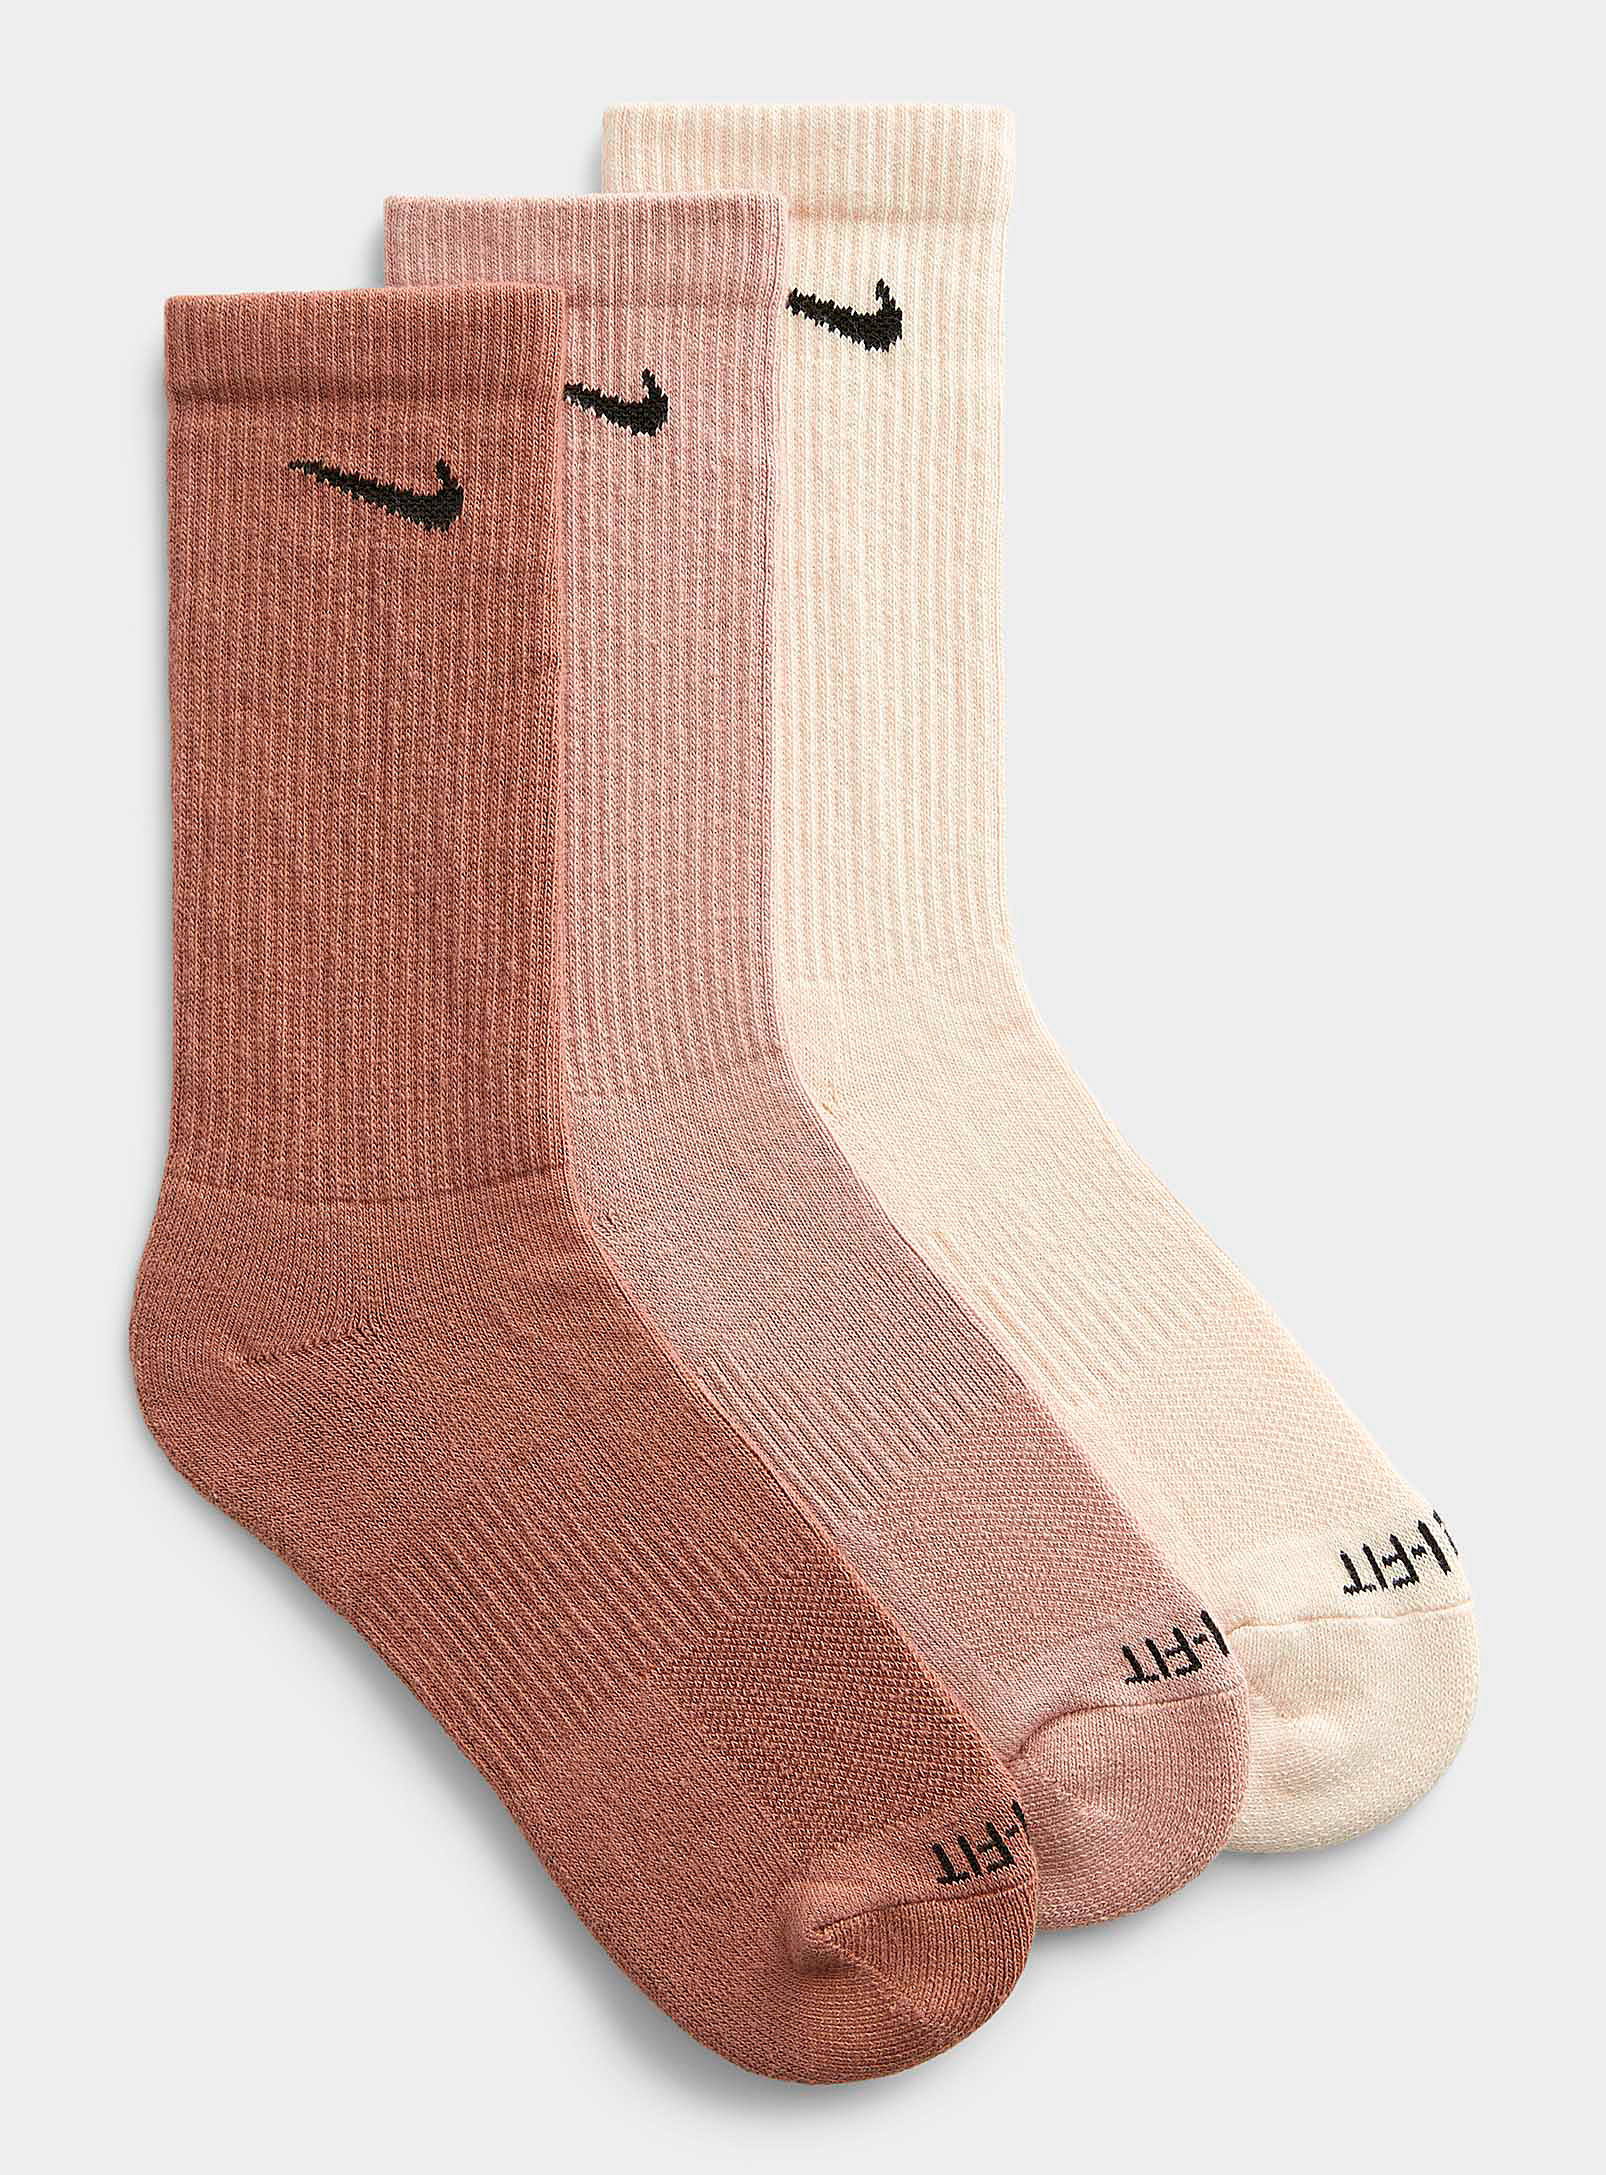 Nike Solid Everyday Plus Socks 3-pack In Patterned Brown